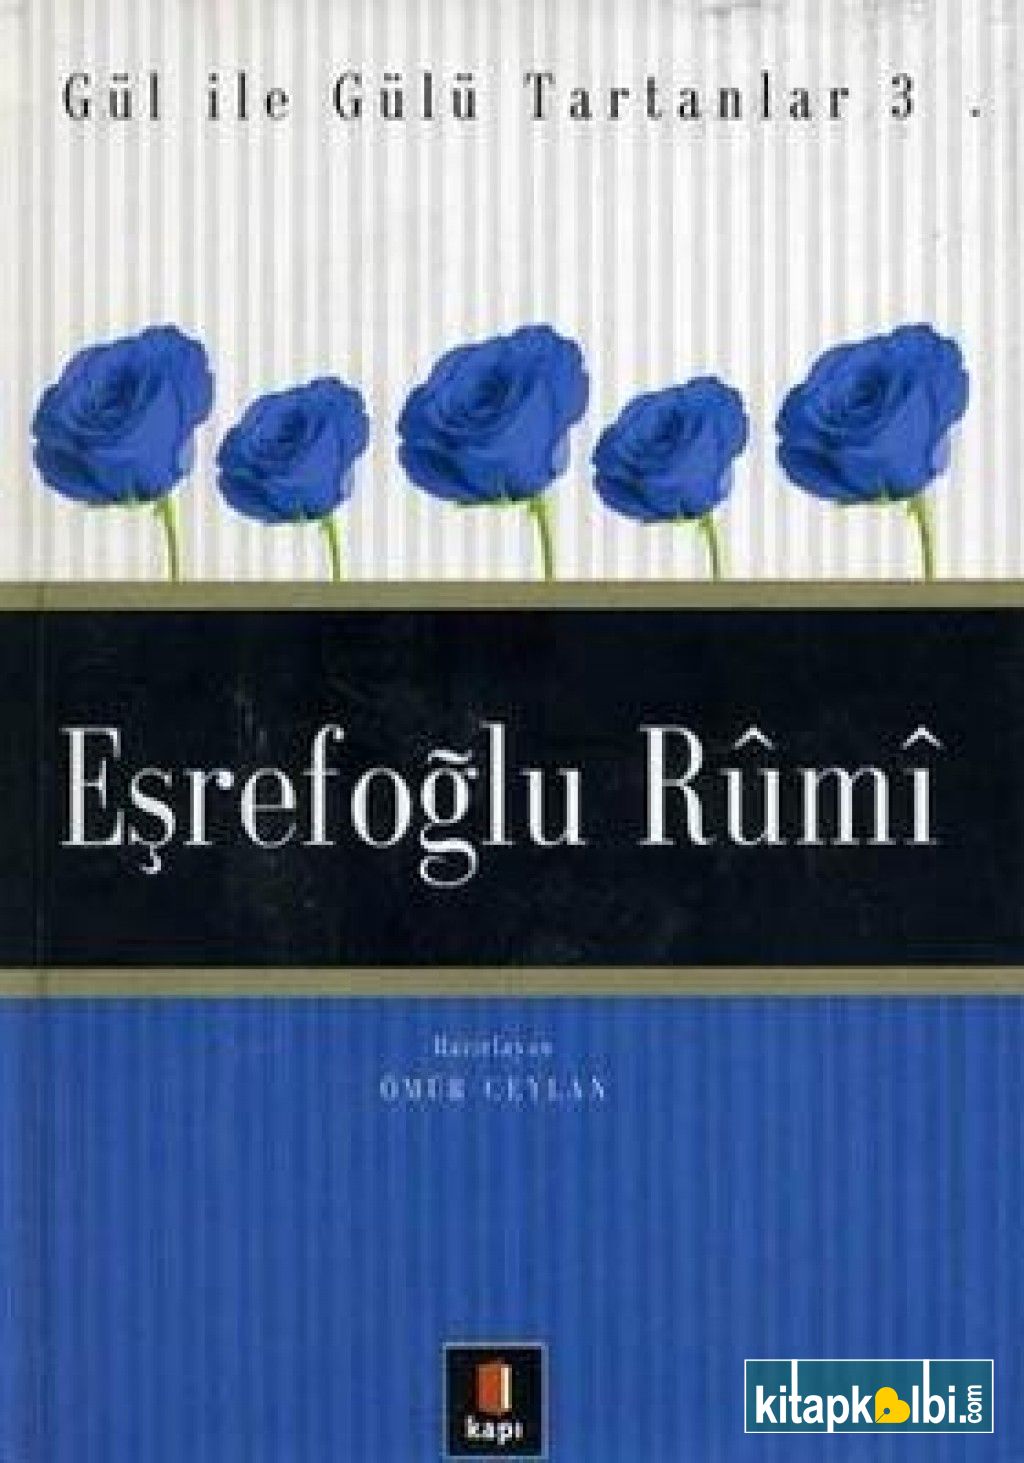 Eşrefoğlu Rumi